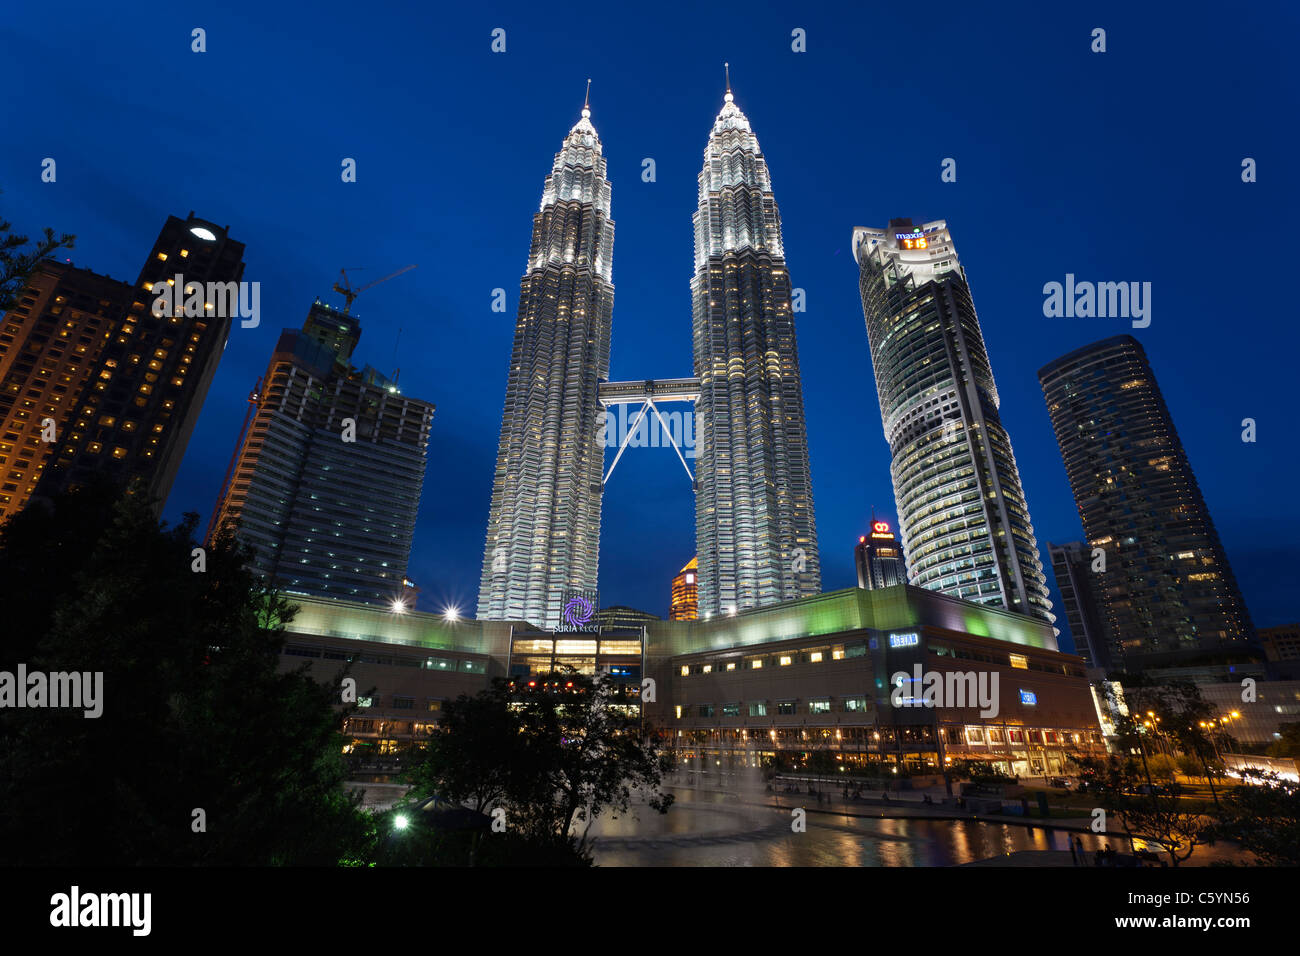 Petronas towers in Kuala Lumpur, Malaysia Stock Photo